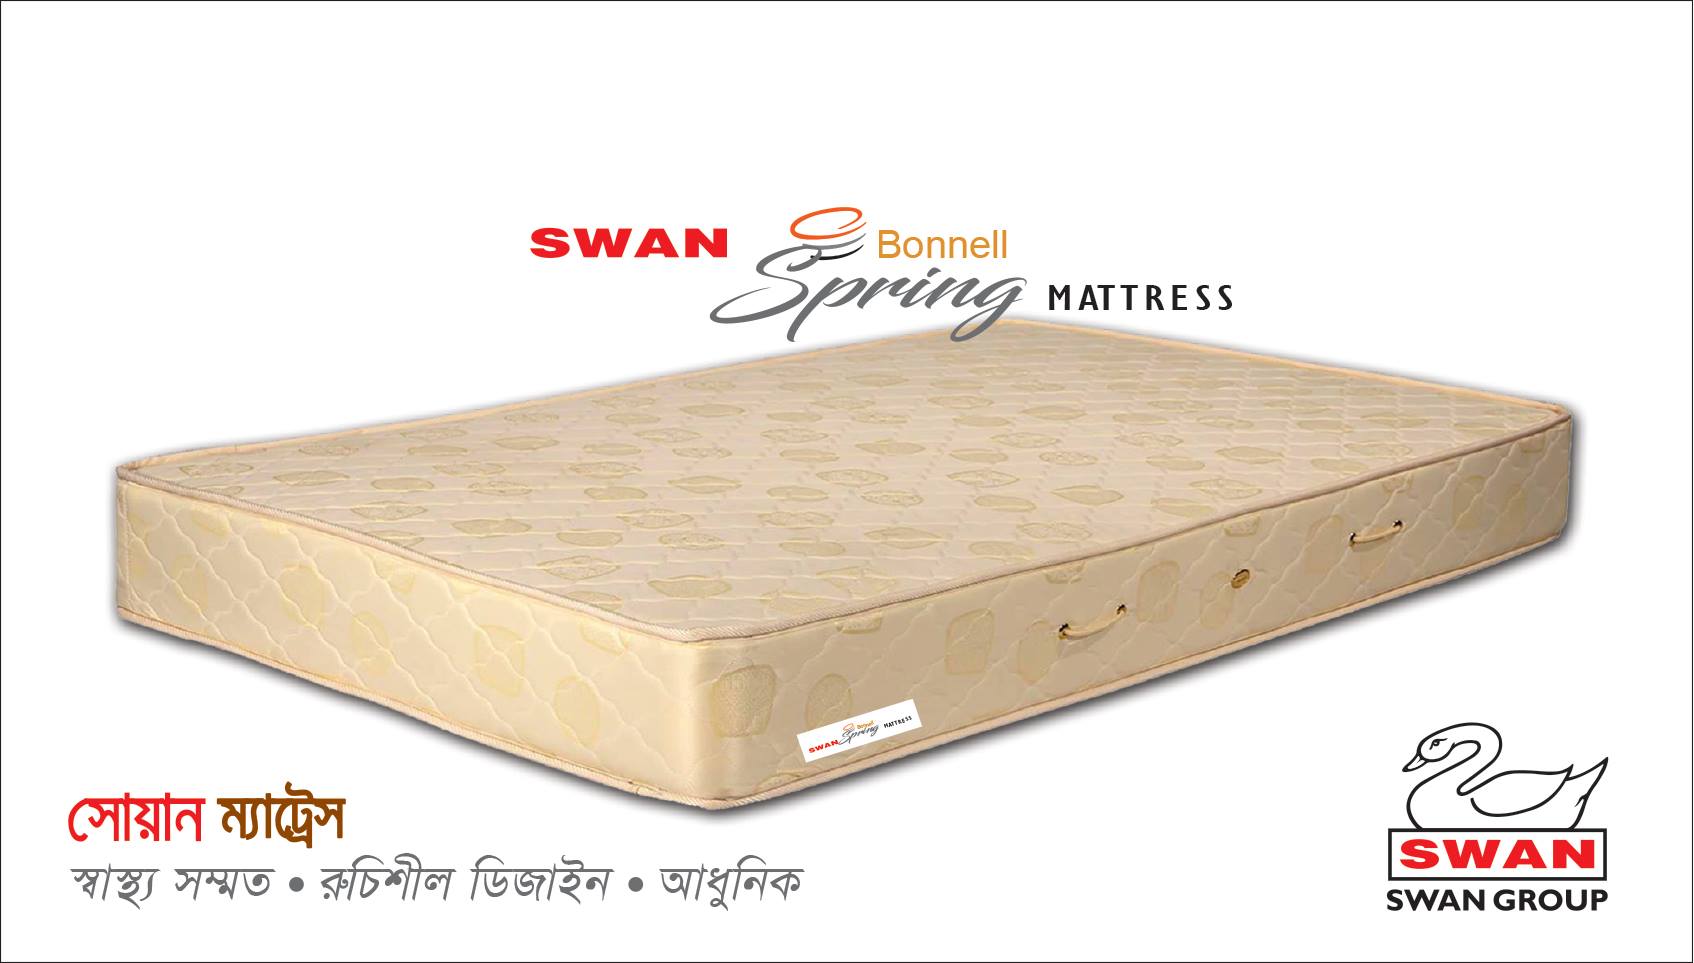 Swan Bonnell Spring Mattress